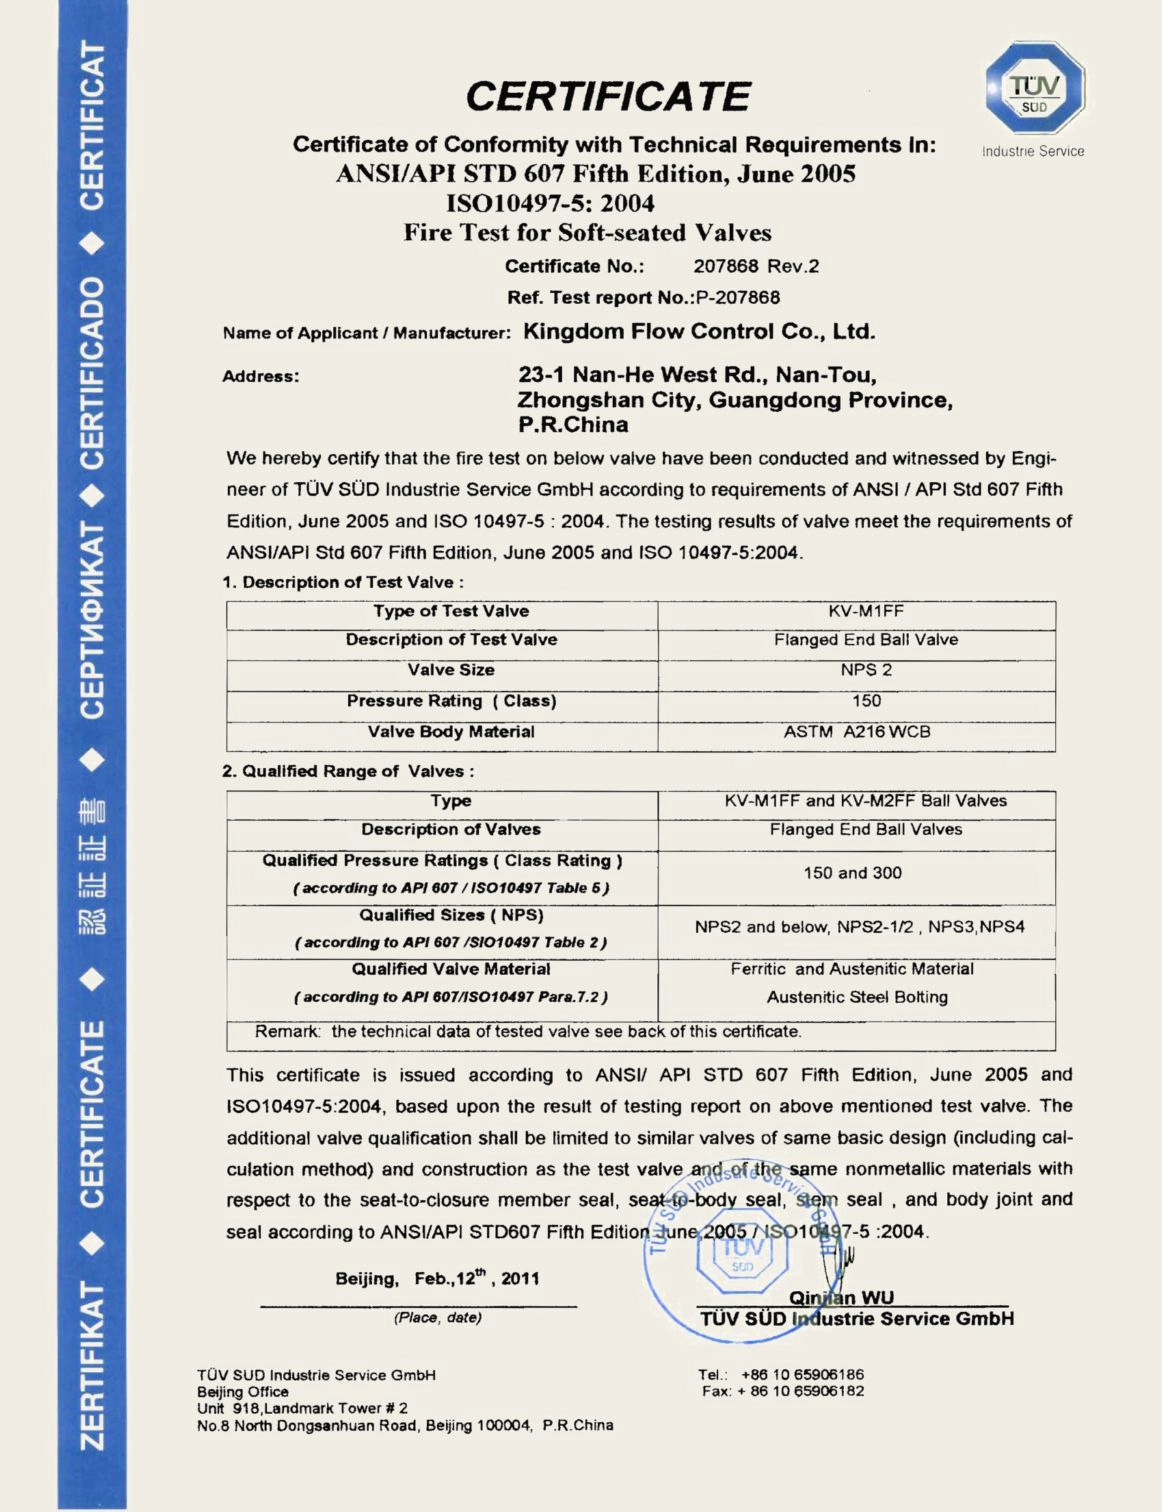 Firesafe Certificate For KV-M1FF Stainless Steel Ball Valve